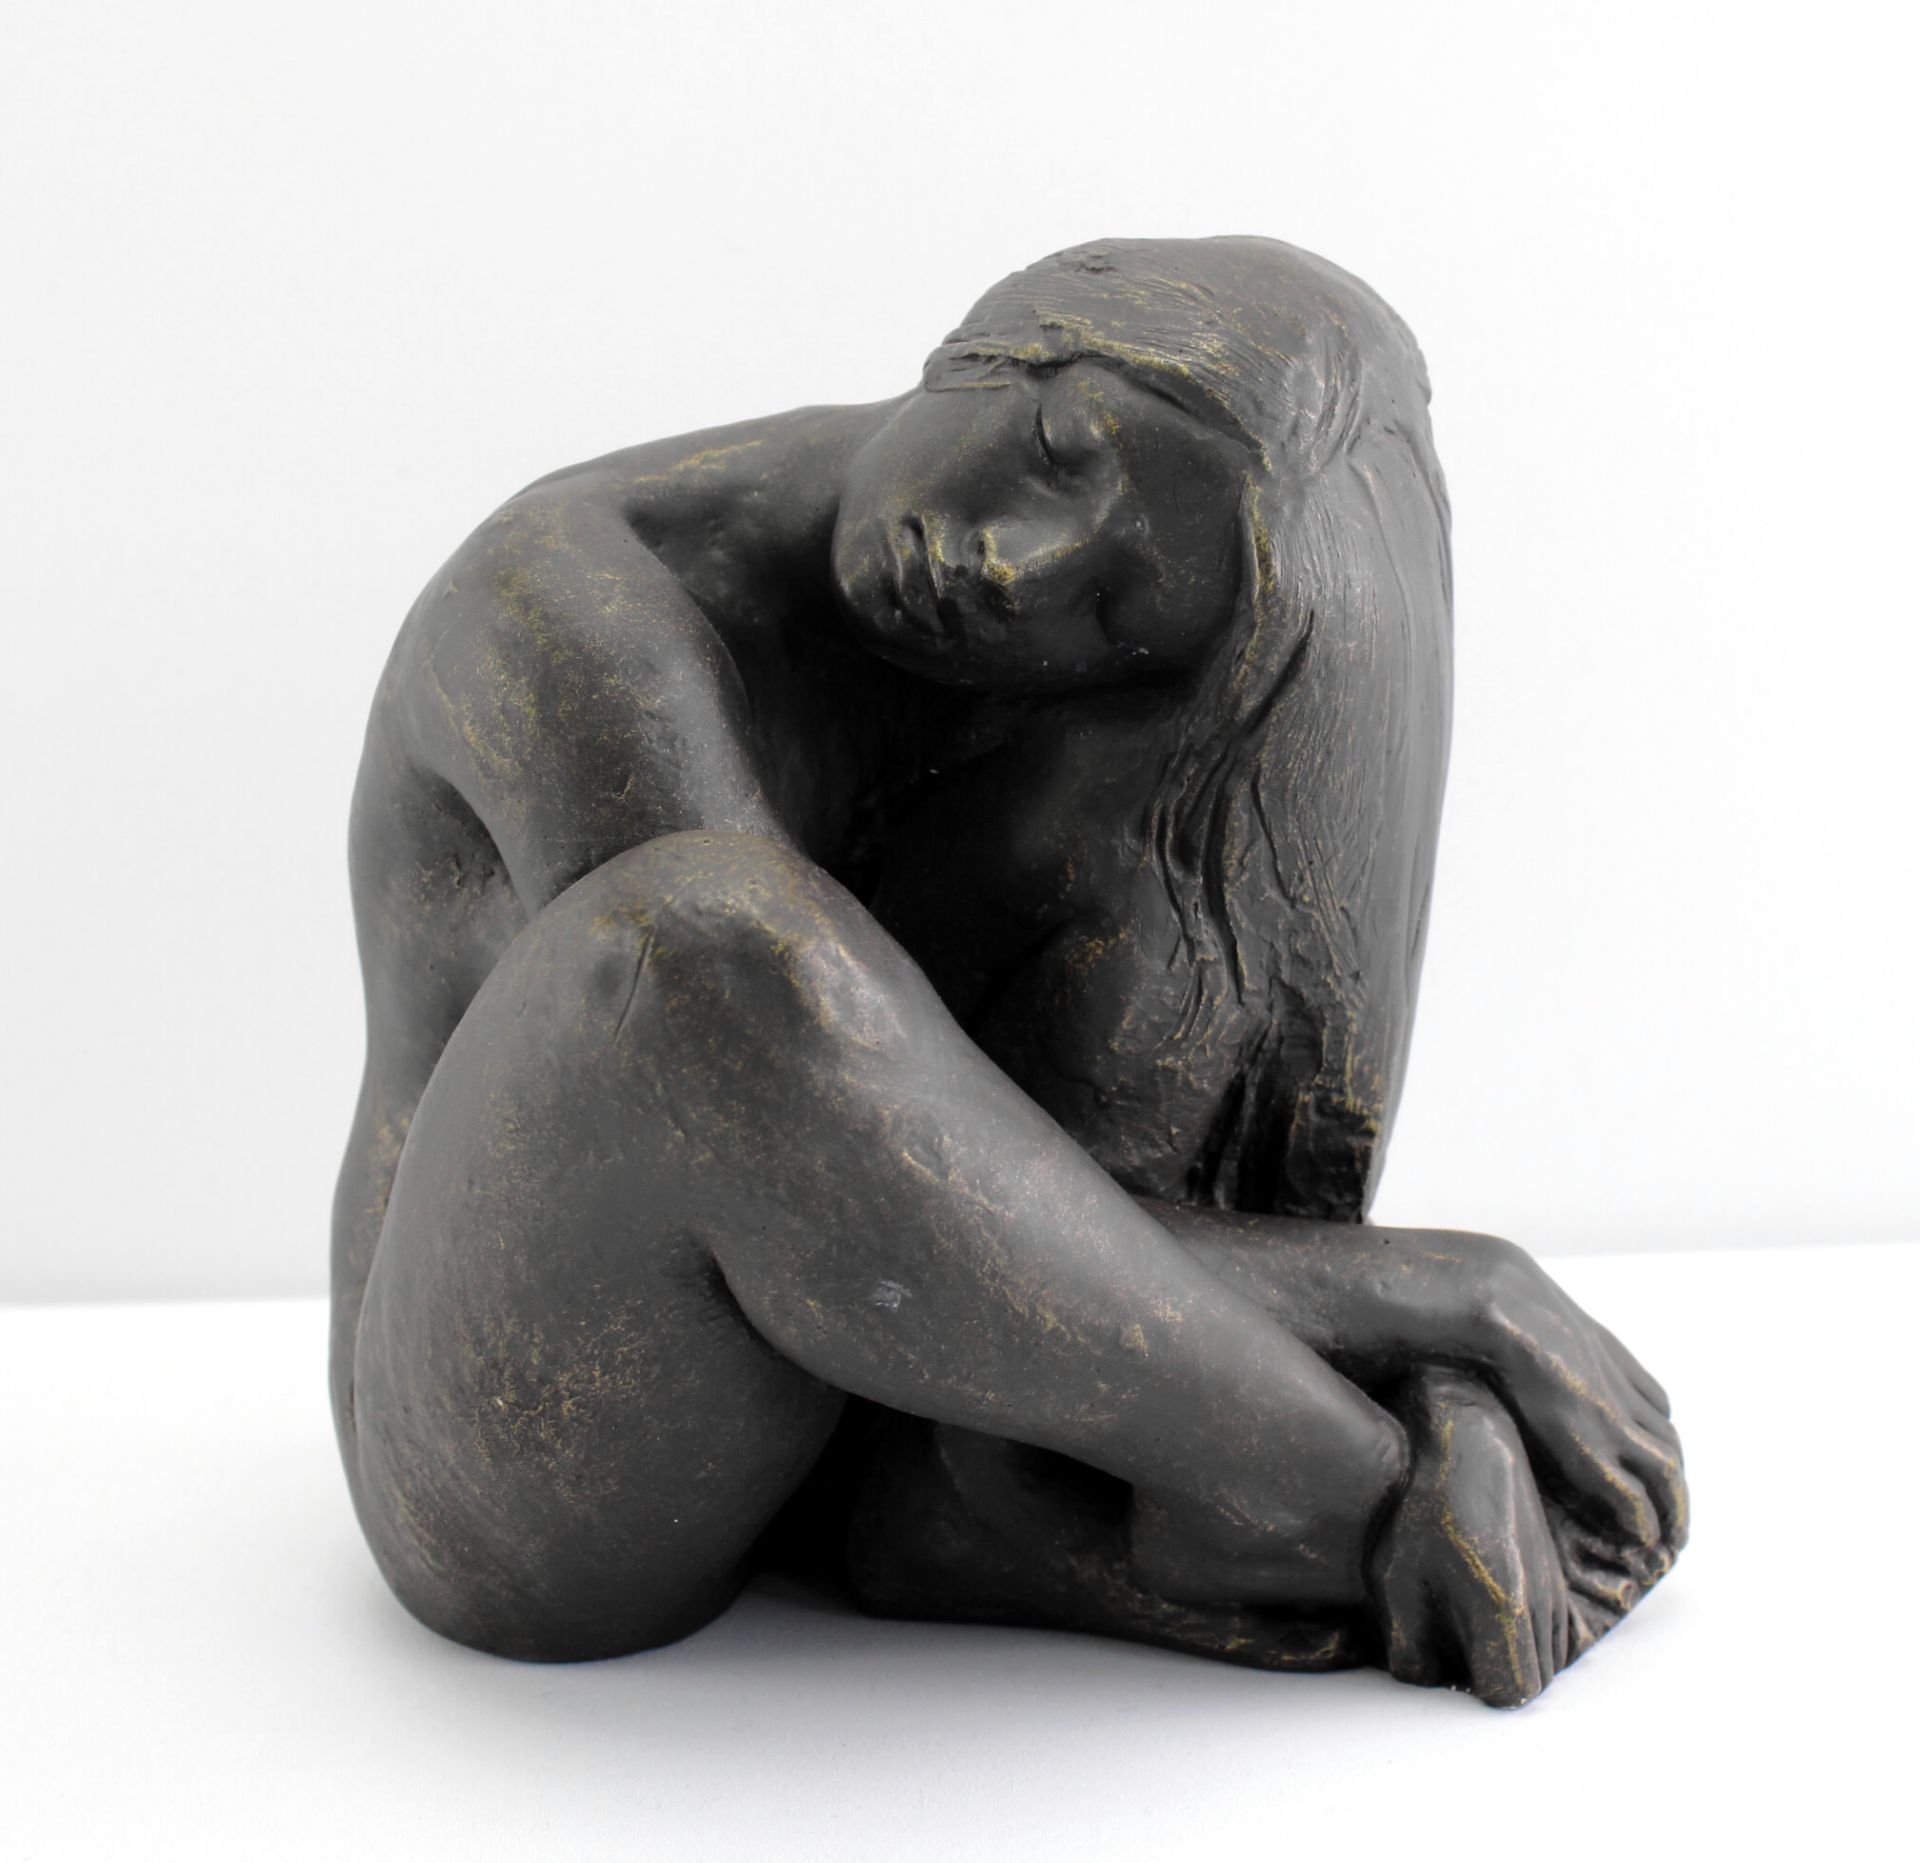 Skulptur "Sitzender weiblicher Akt" Kunstguss bronziert, Höhe 21 cm